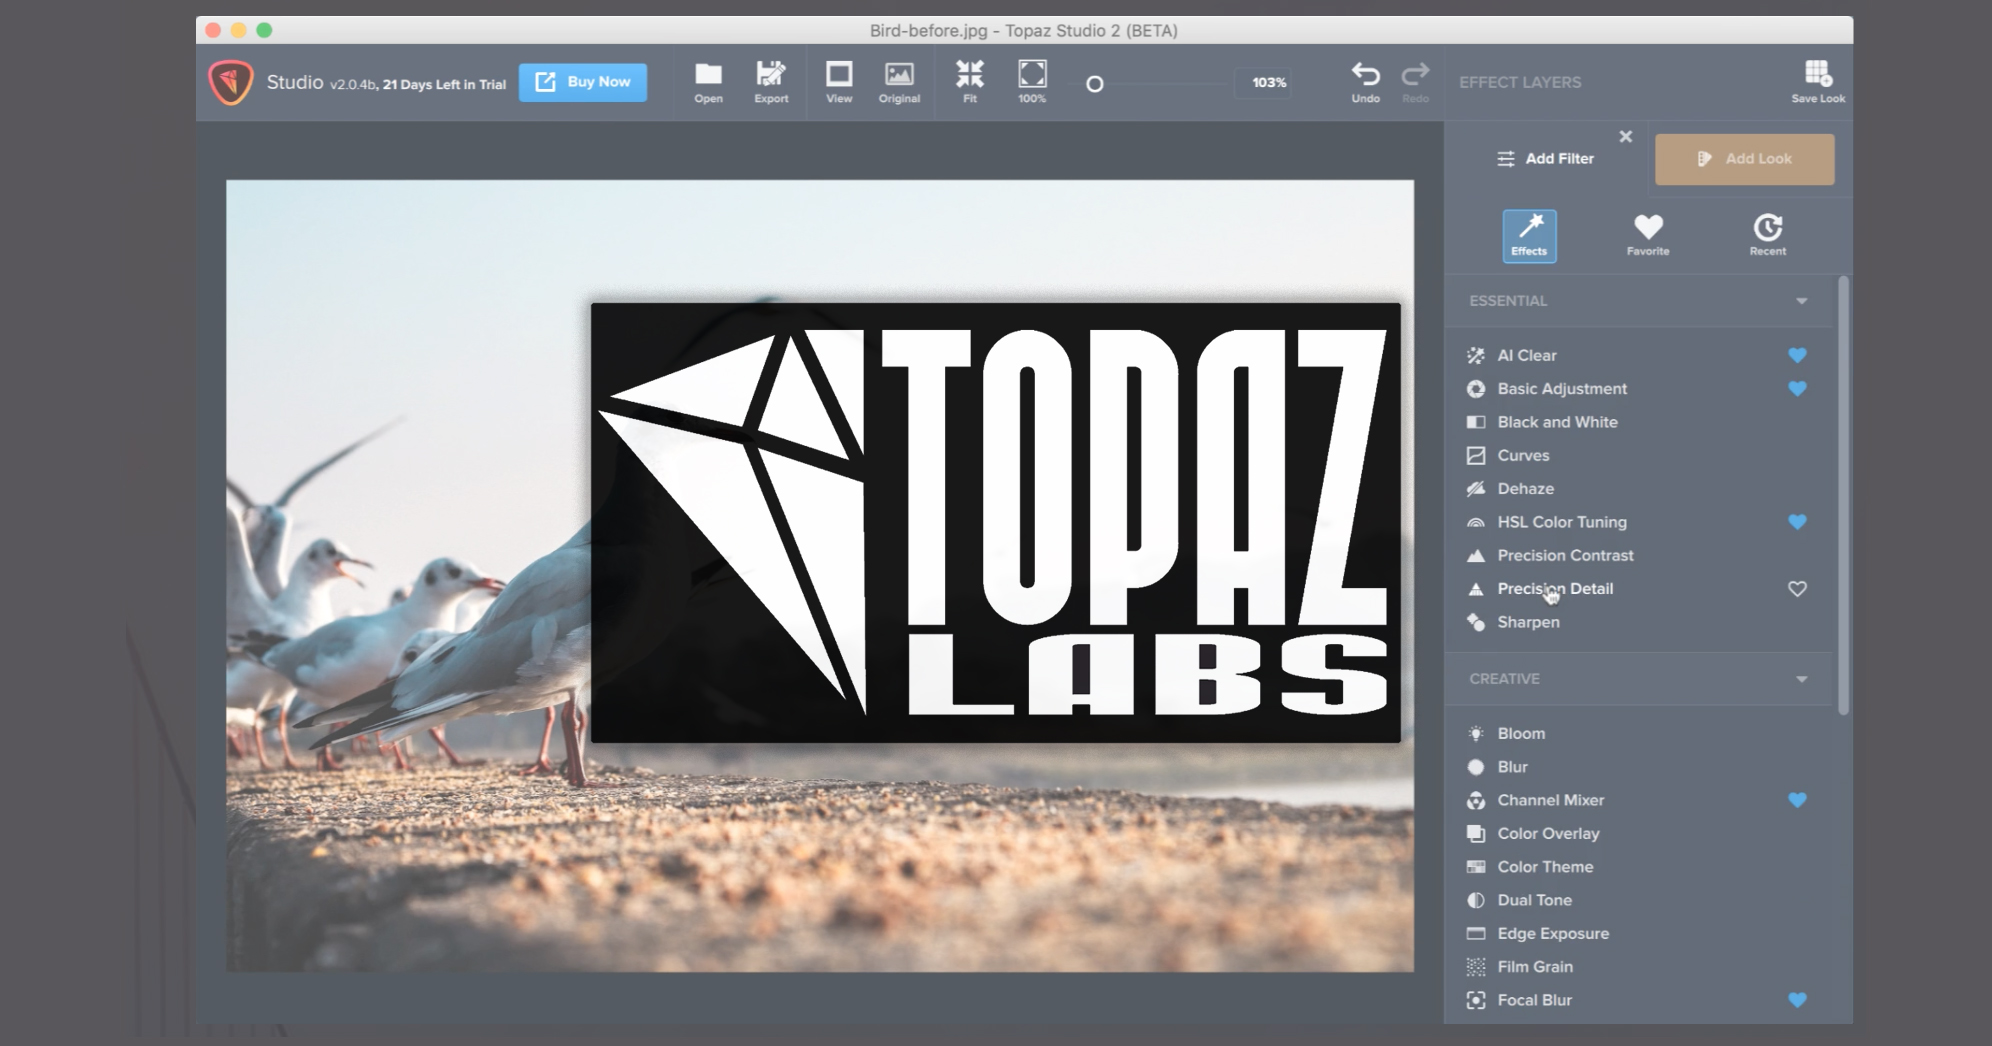 Topaz Labs empezará a cobrar por las actualizaciones, lo que provoca indignación